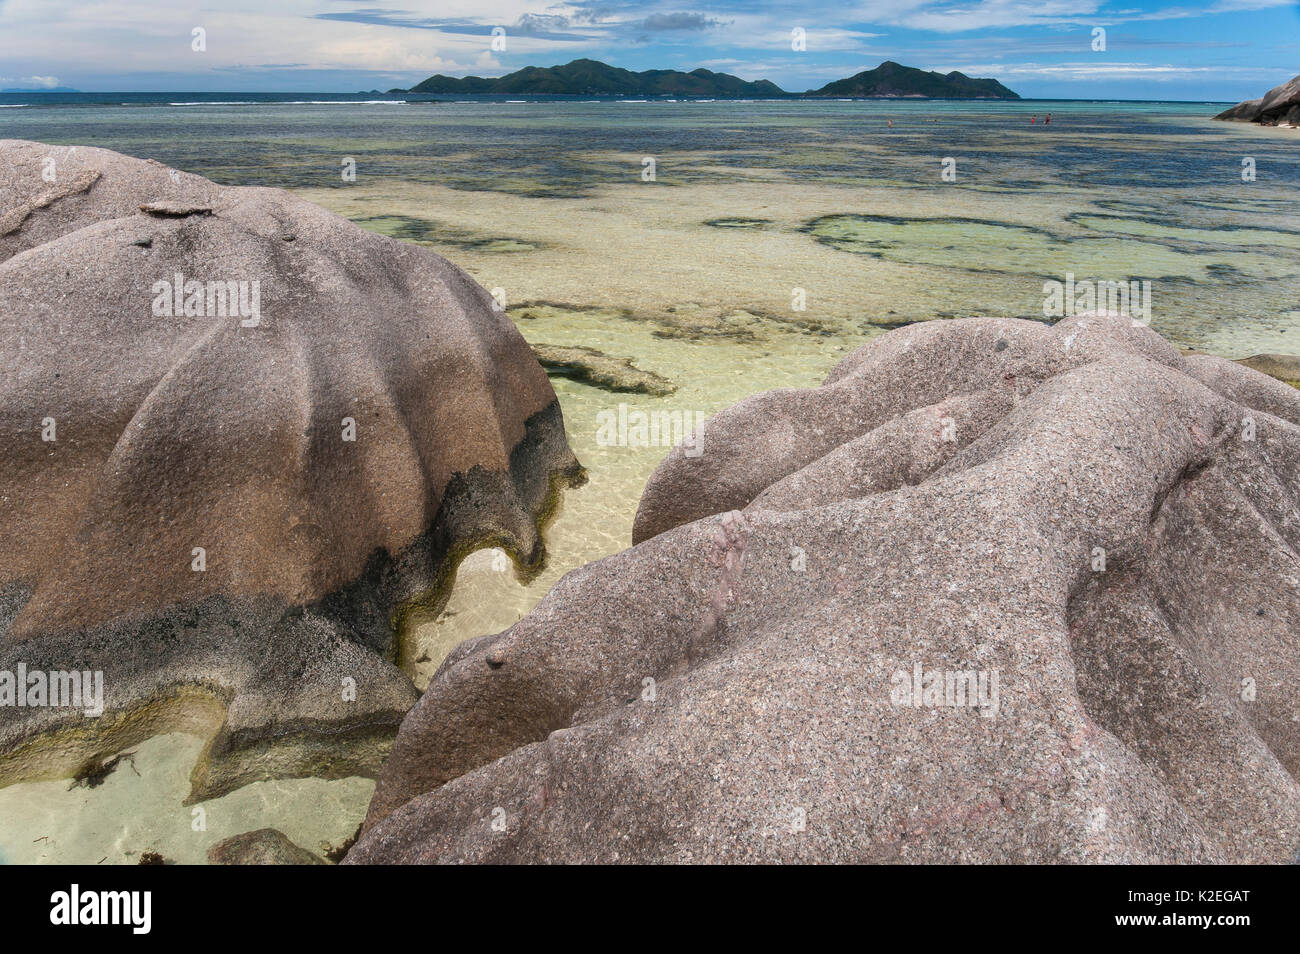 Les rochers de granit et de paysages d'eau peu profonde, l'Anse Saint-Jean, l'île de La Digue, Praslin Island dans l'arrière-plan, République des Seychelles Banque D'Images